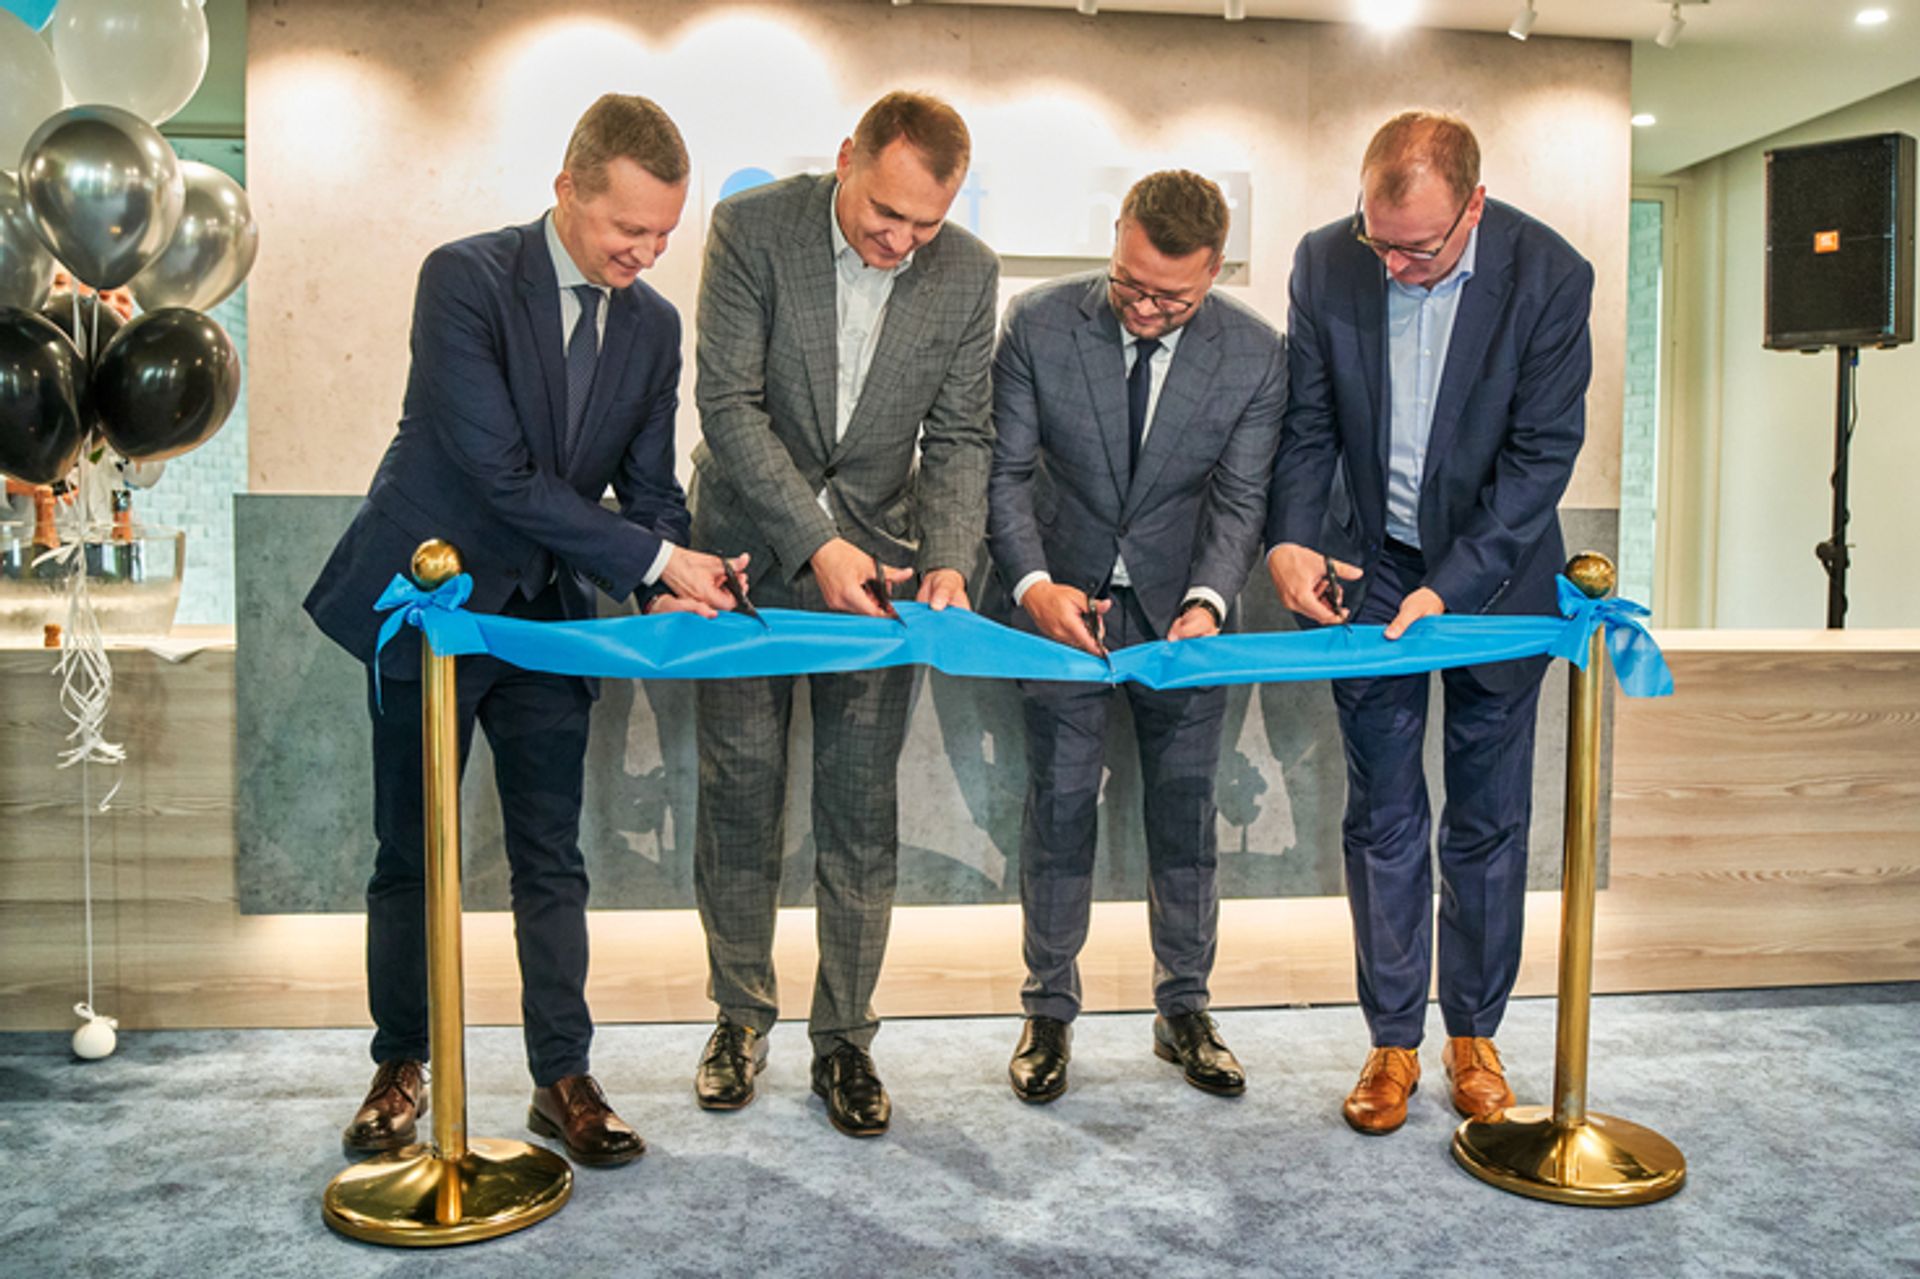 Firma z branży IT, Britenet otworzyła w Lublinie największe biuro w historii firmy